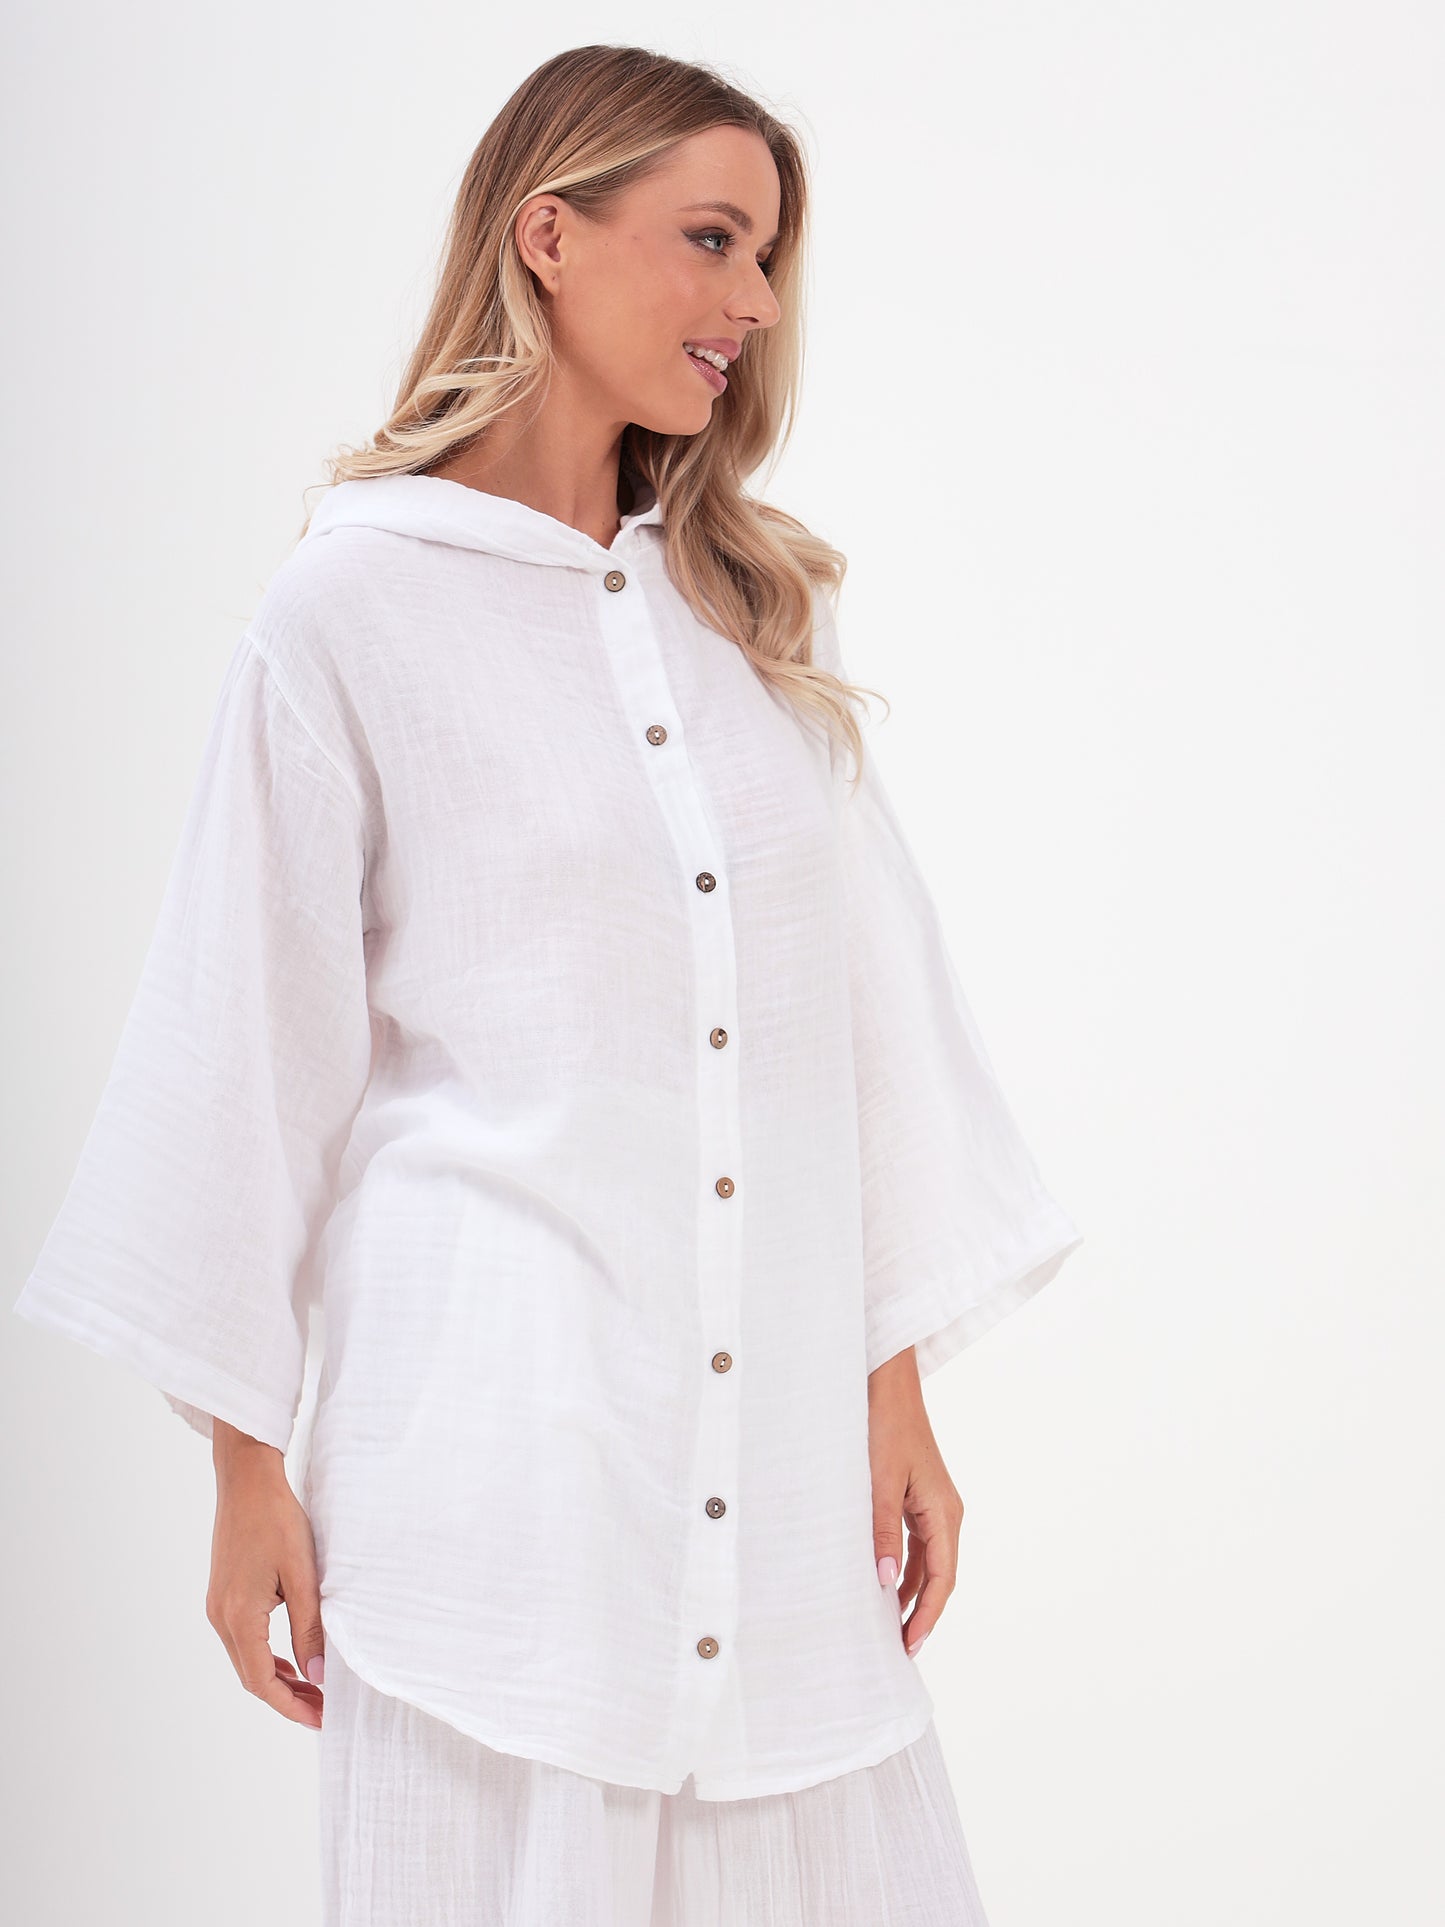 Damen Sommer Mode Hemd mit Kapuze aus lässige Musselin Freizeit LMS-6468 White Weiß